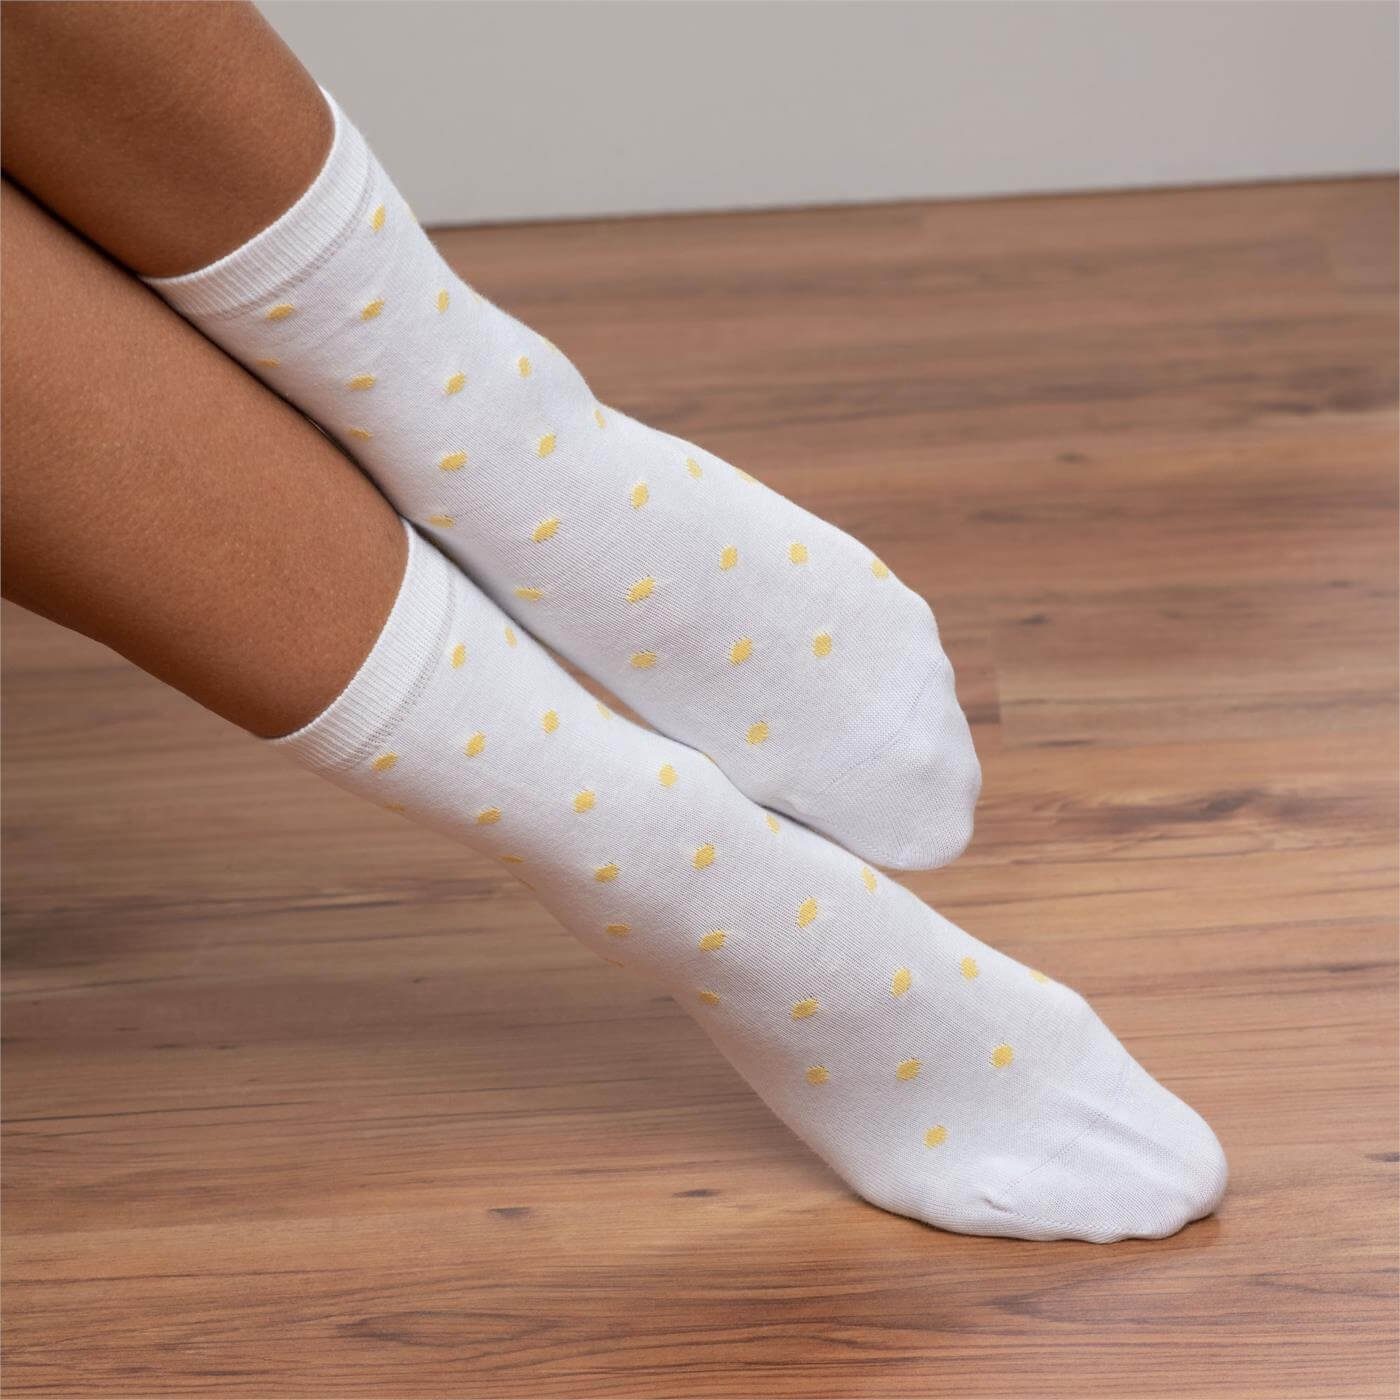 CRAFTS einmal im Socken Butter passenden dezent Uni-Ton LIVING Einmal BETTINA gepunktet,